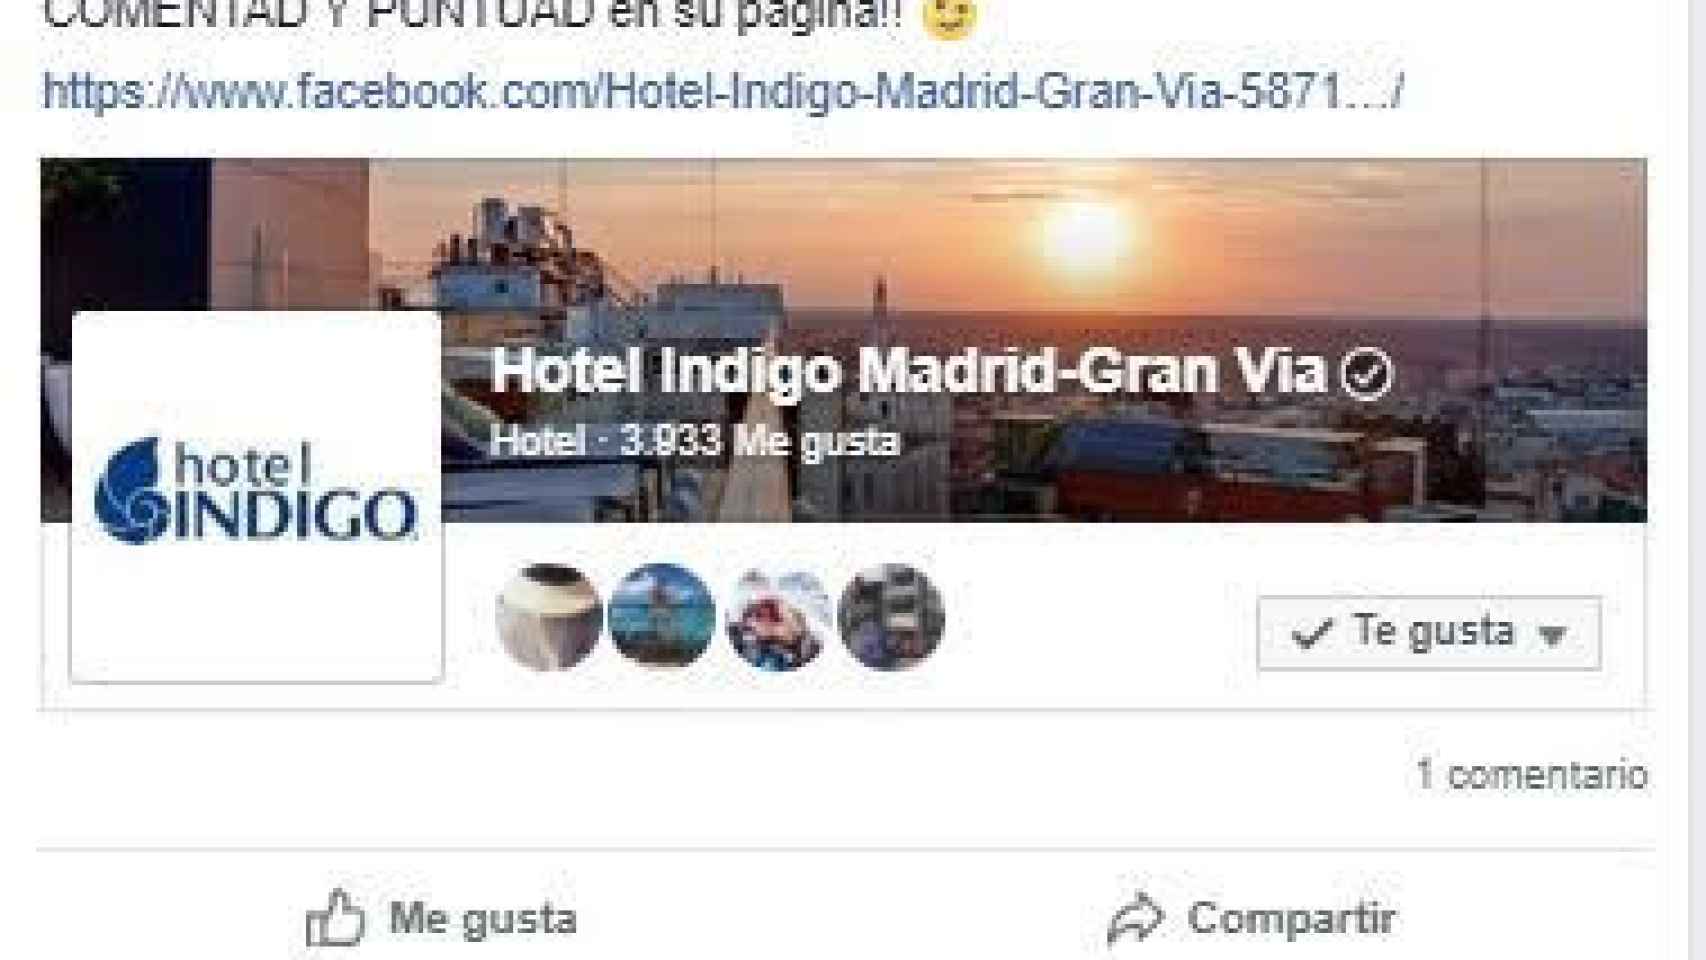 Un usuario de Facebook anima a poner comentarios negativos al hotel.